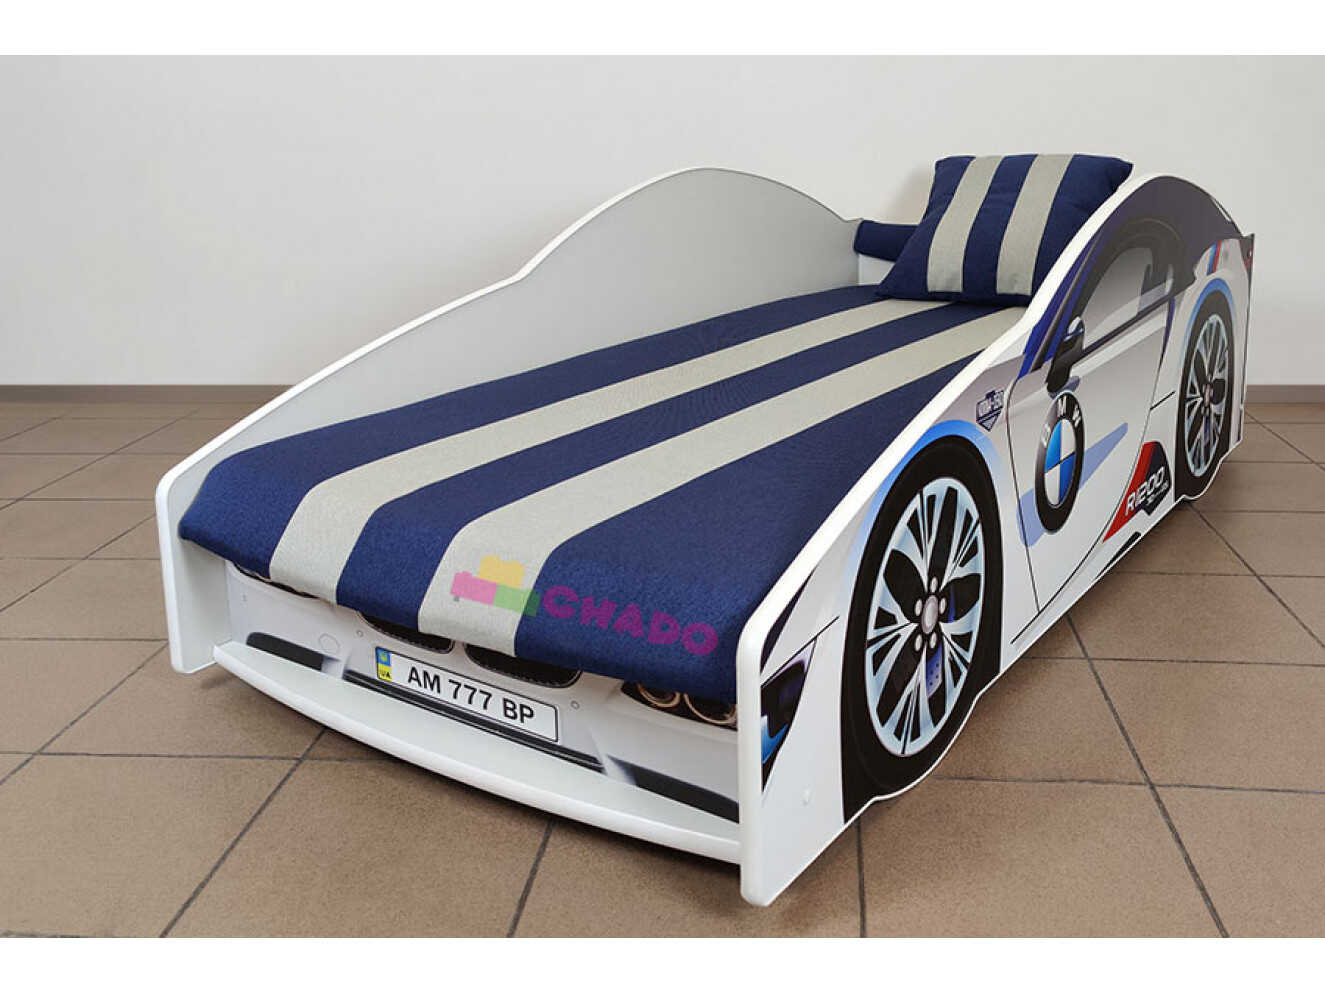 Ліжко машина Еліт БМВ / ELIT BMW